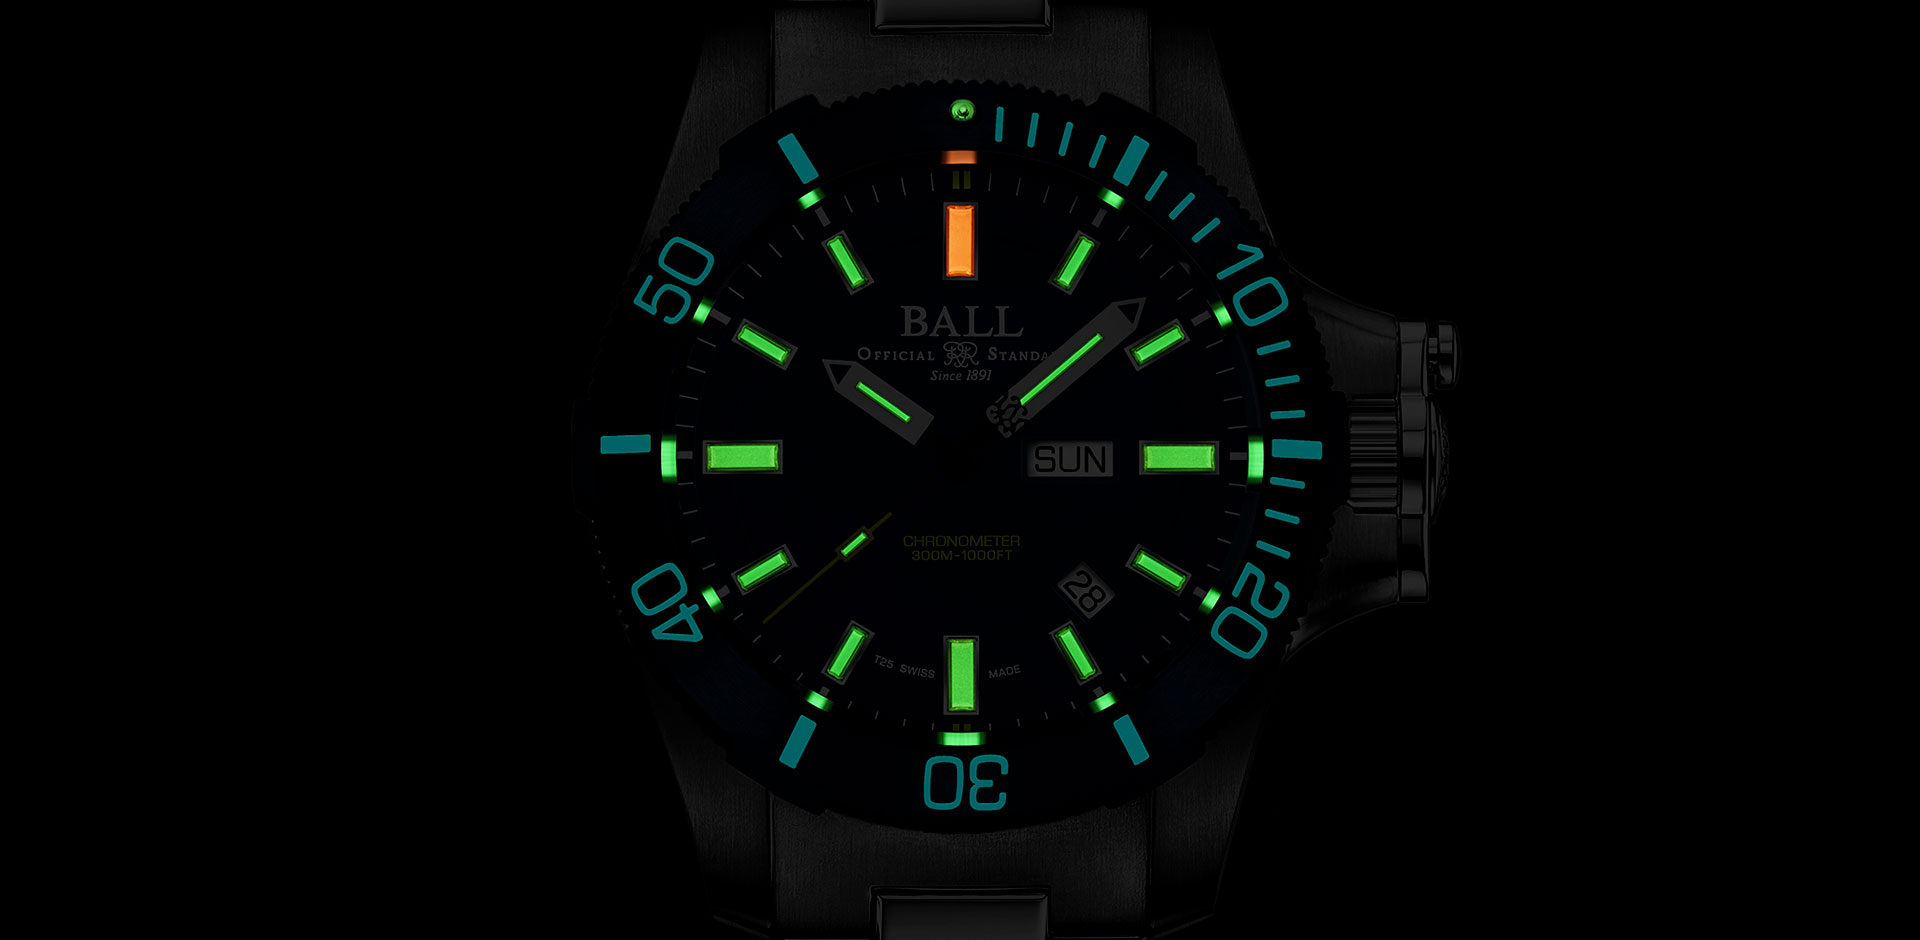 ball watch submarine warfare